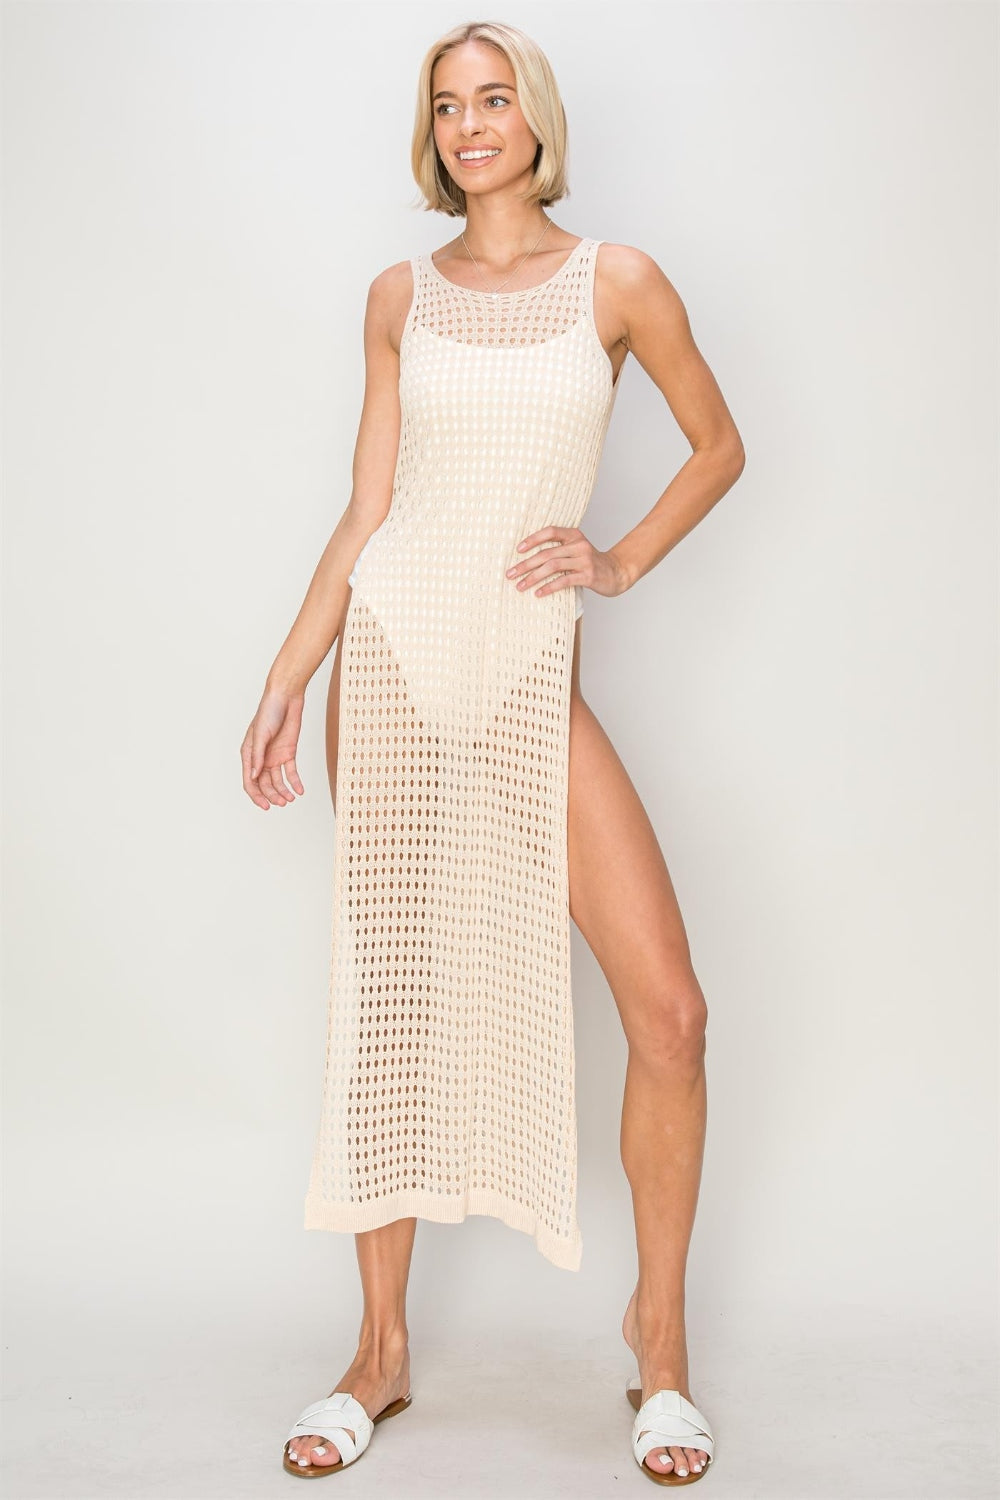 Stylish Crochet Backless Cover Up Dress by HYFVE